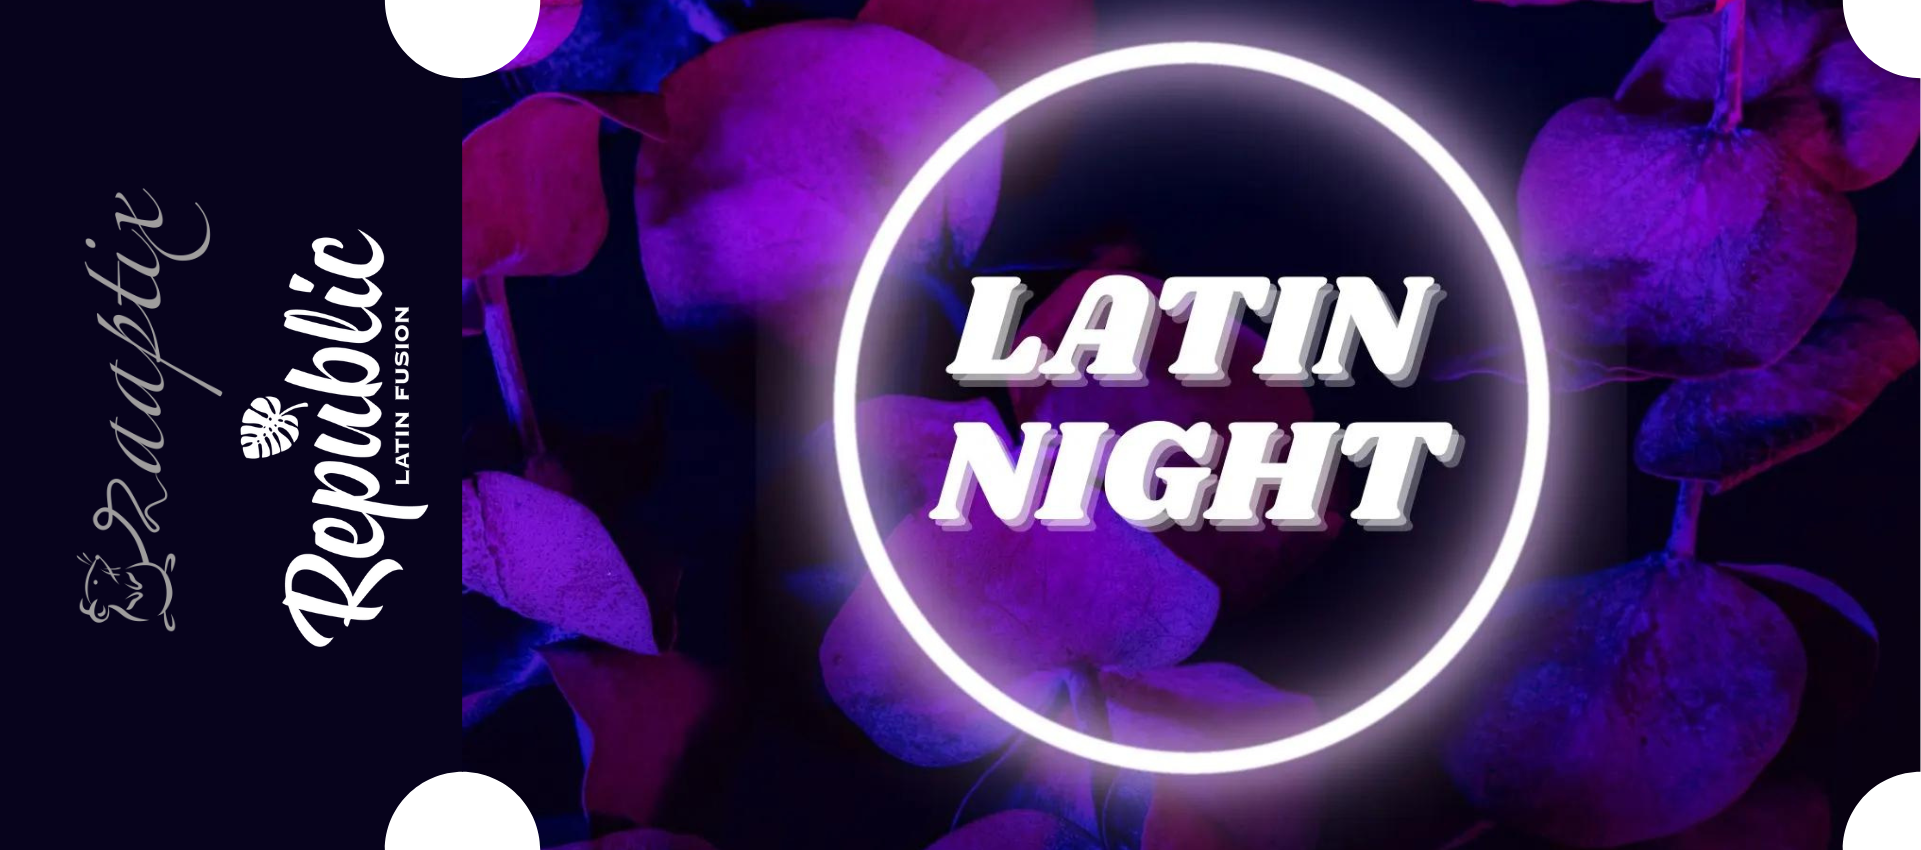 latin night Feb 18 ticket